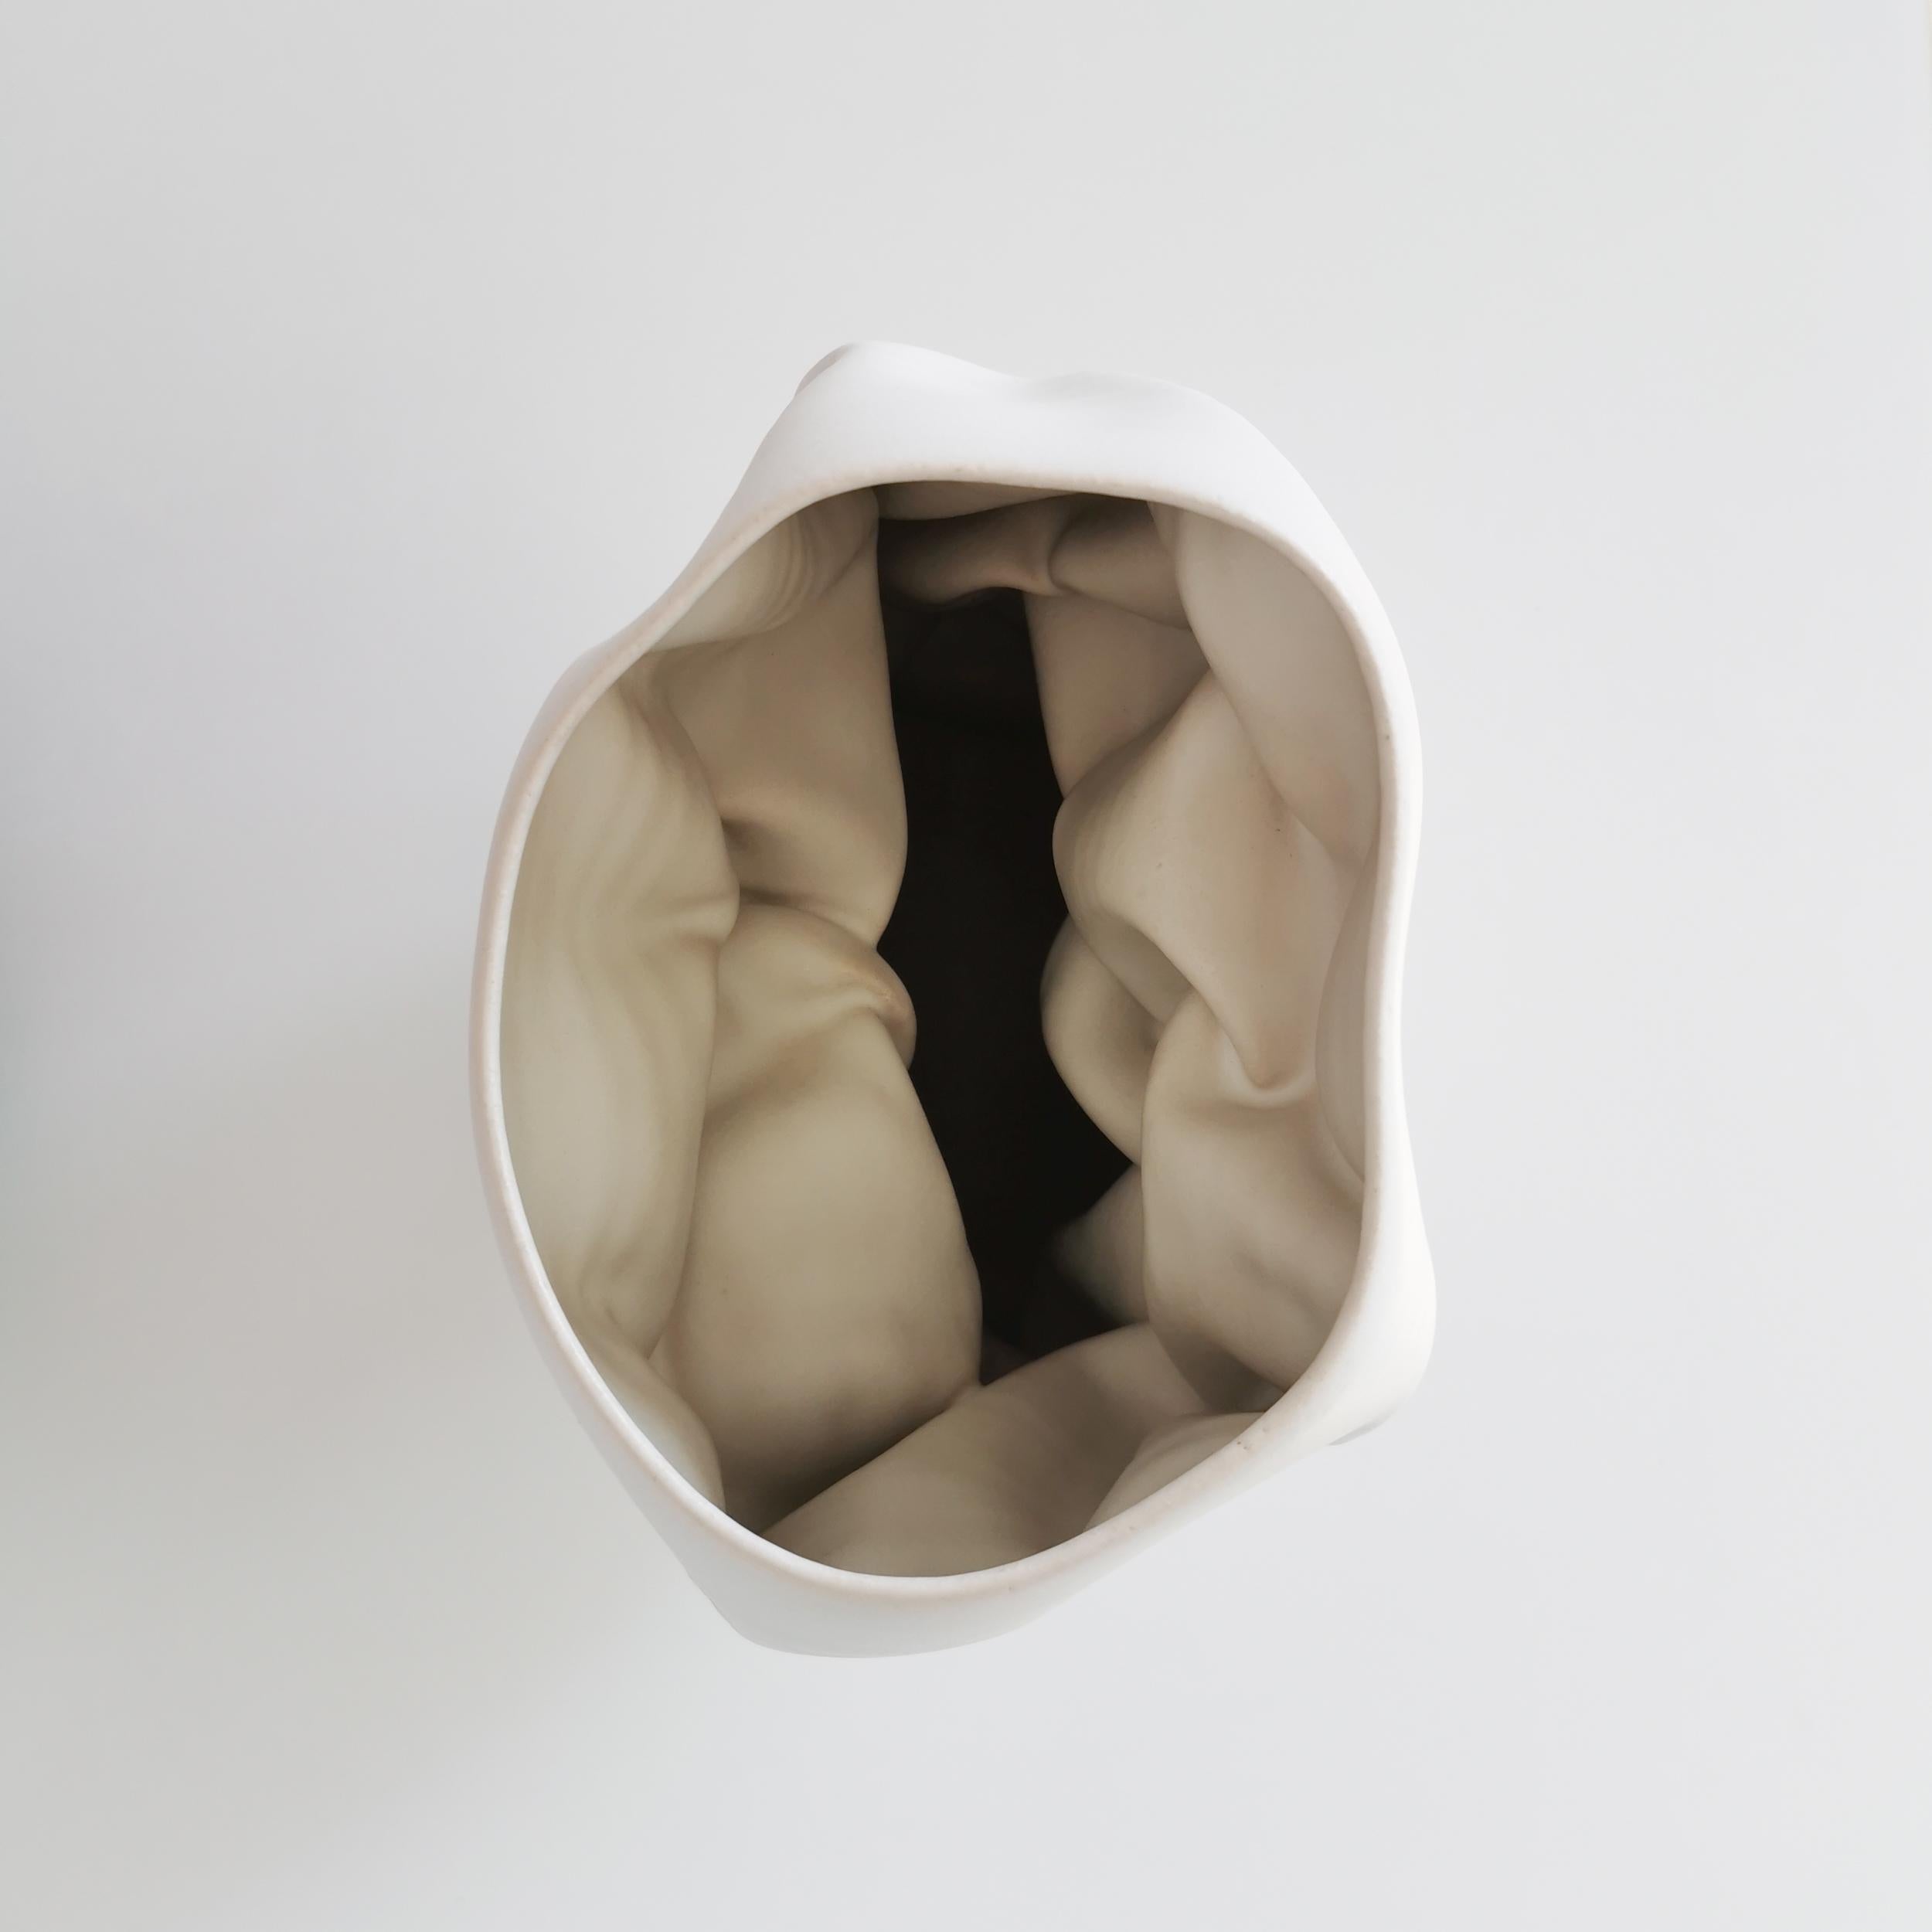 Clay Ceramic Sculpture Vessel, N. 50 Medium Tall White Crumpled Form, Objet d'Art